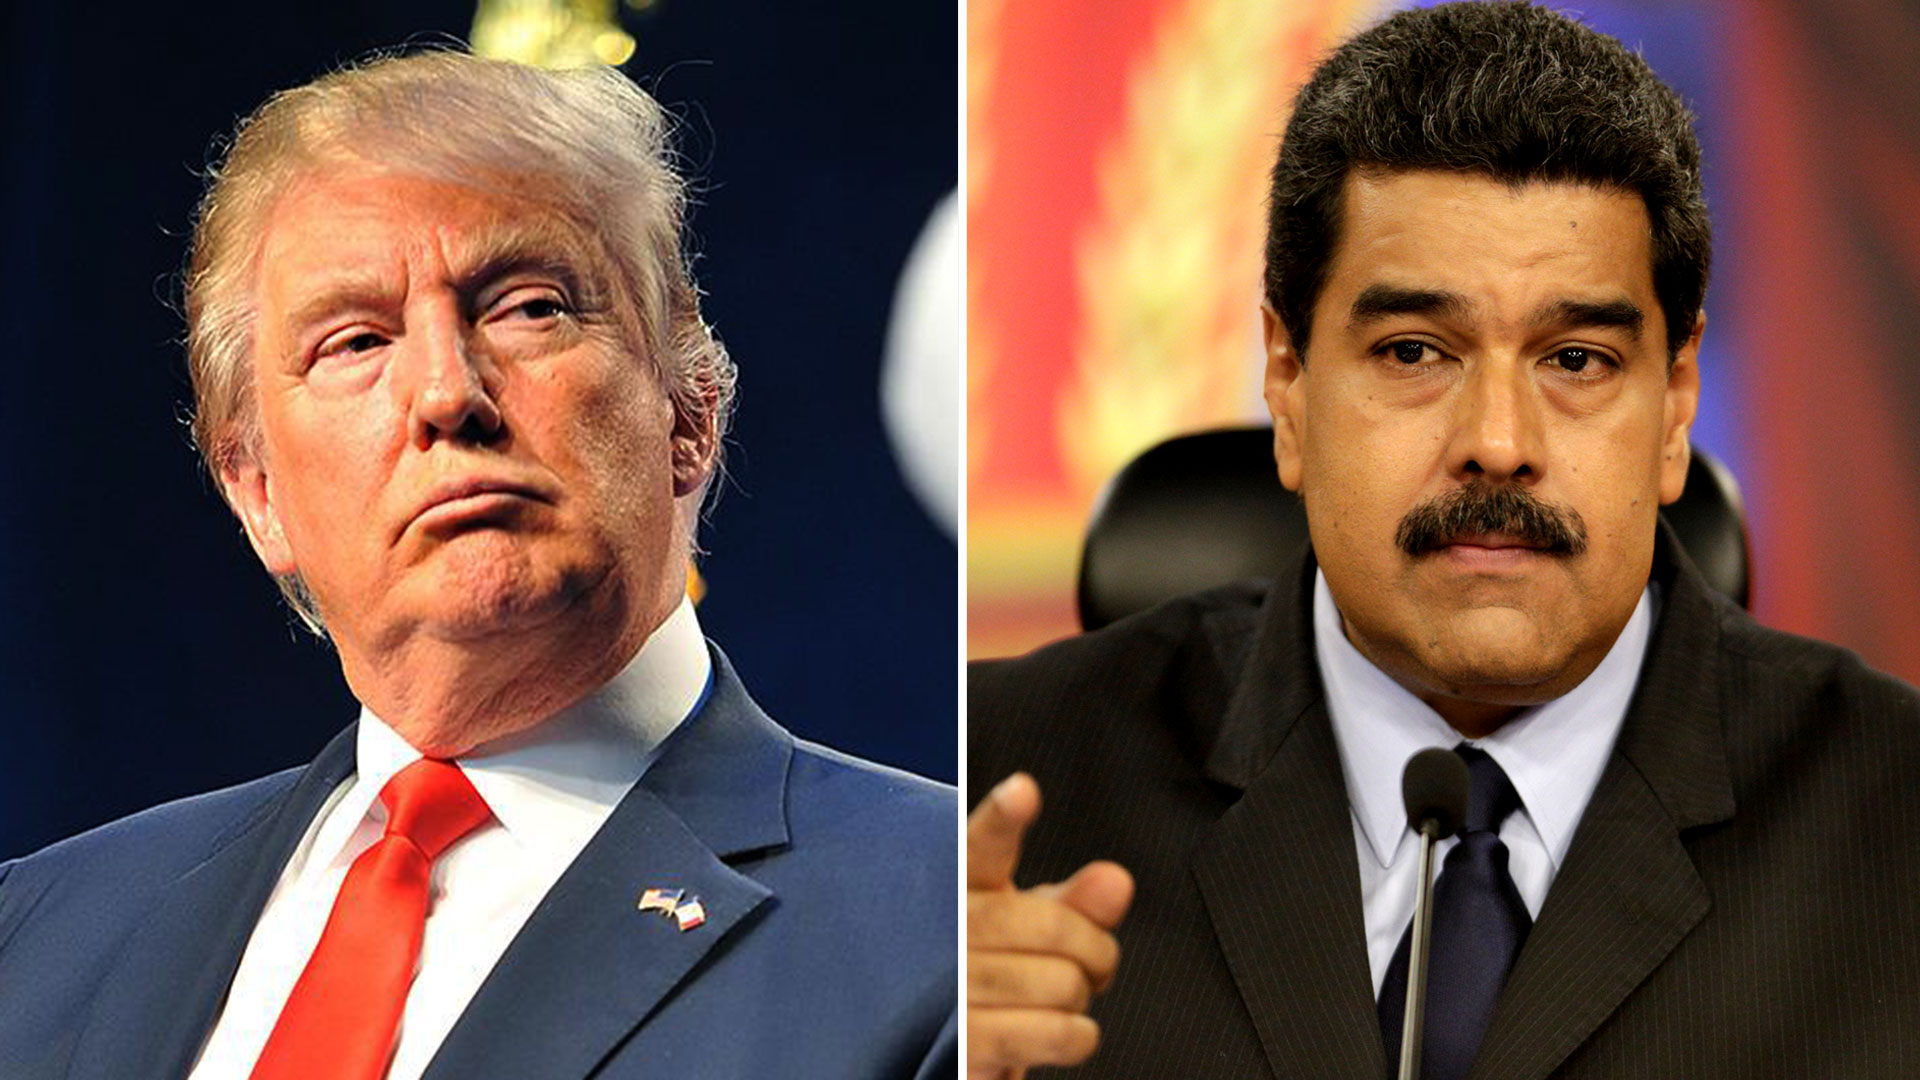 El presidente estadounidense Donald Trump está aumentando la presión sobre la dictadura de Nicolás Maduro